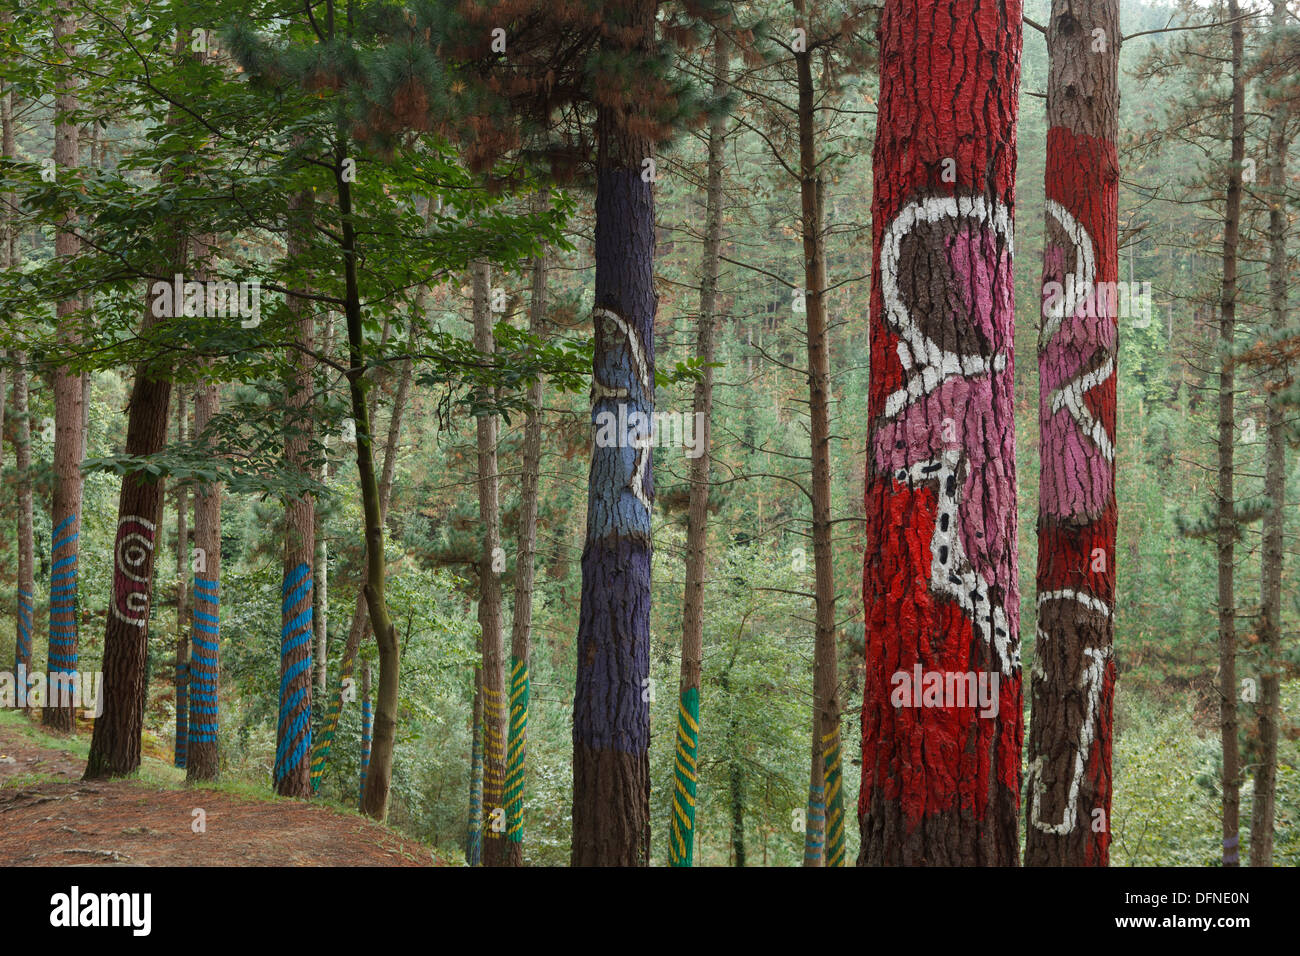 Painted trunks of trees, El bosque pintado de Oma, El bosque animado de Oma, Hay mas ninos de los que parece, There are more chi Stock Photo